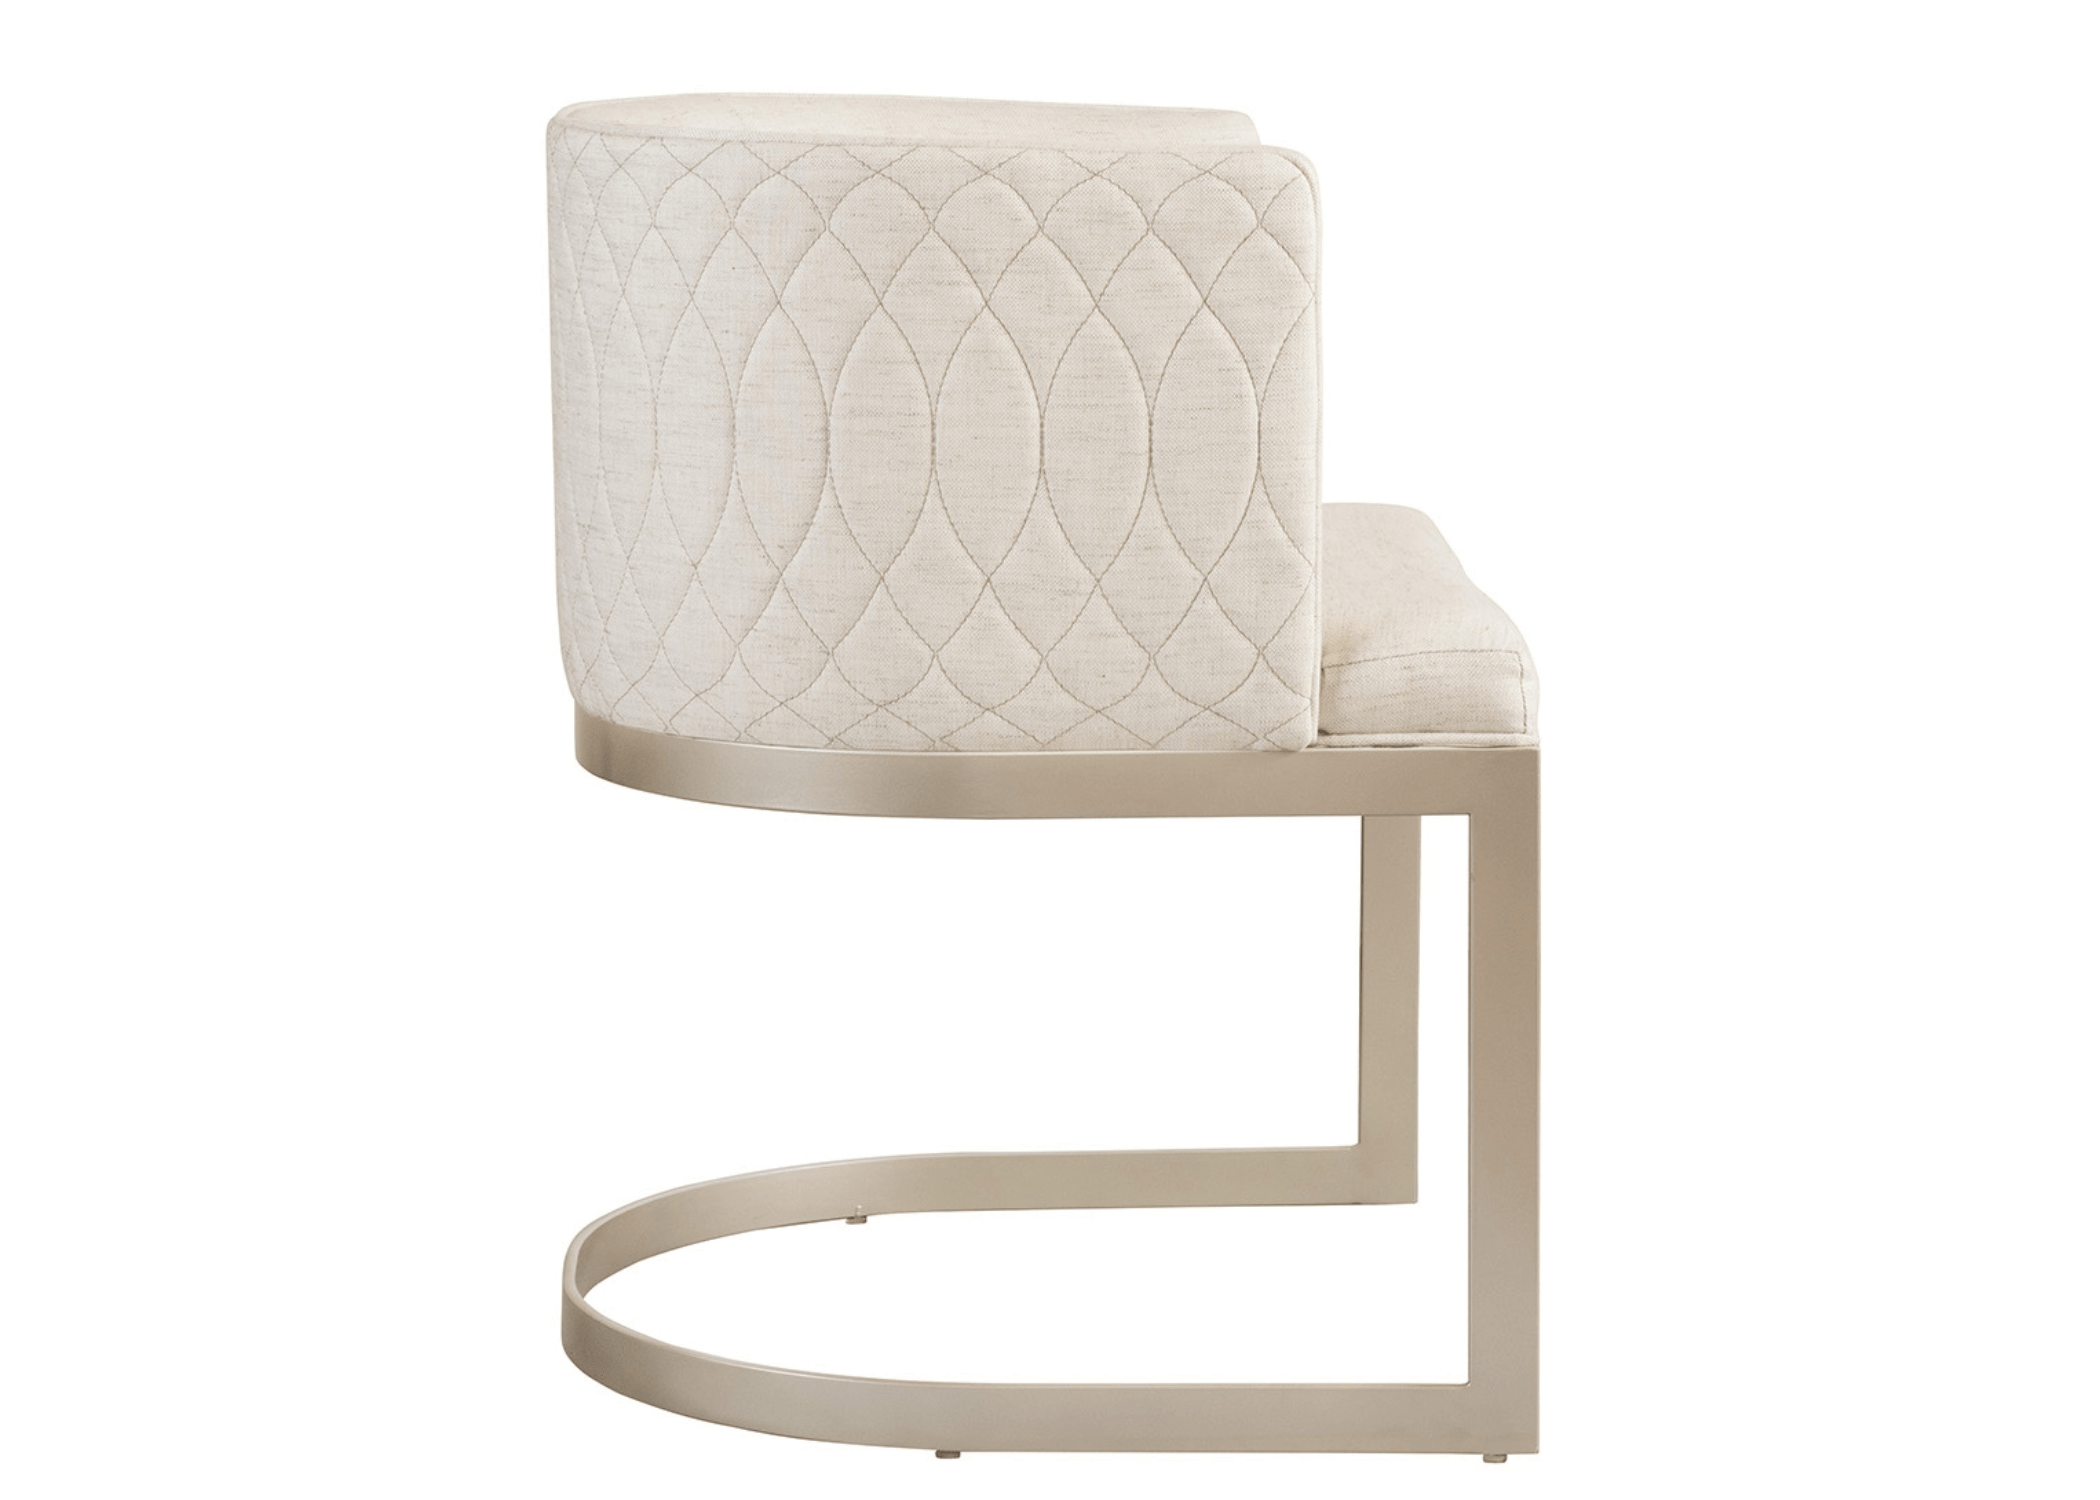 Design contemporâneo: moderno na Cadeira Naya Matelassê.